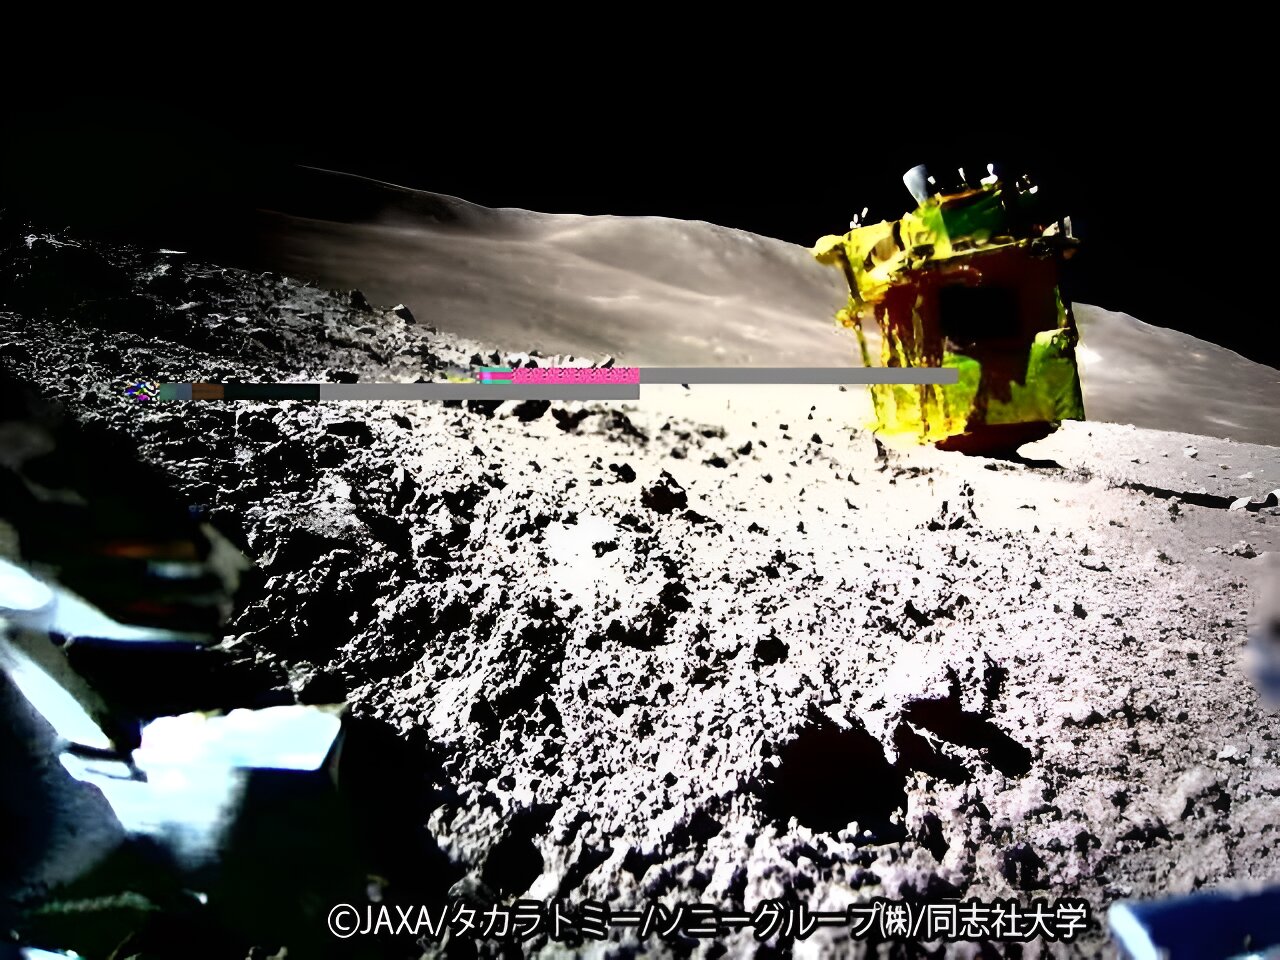 Japan’s Lander Returns to Dormancy During the Lunar Night.